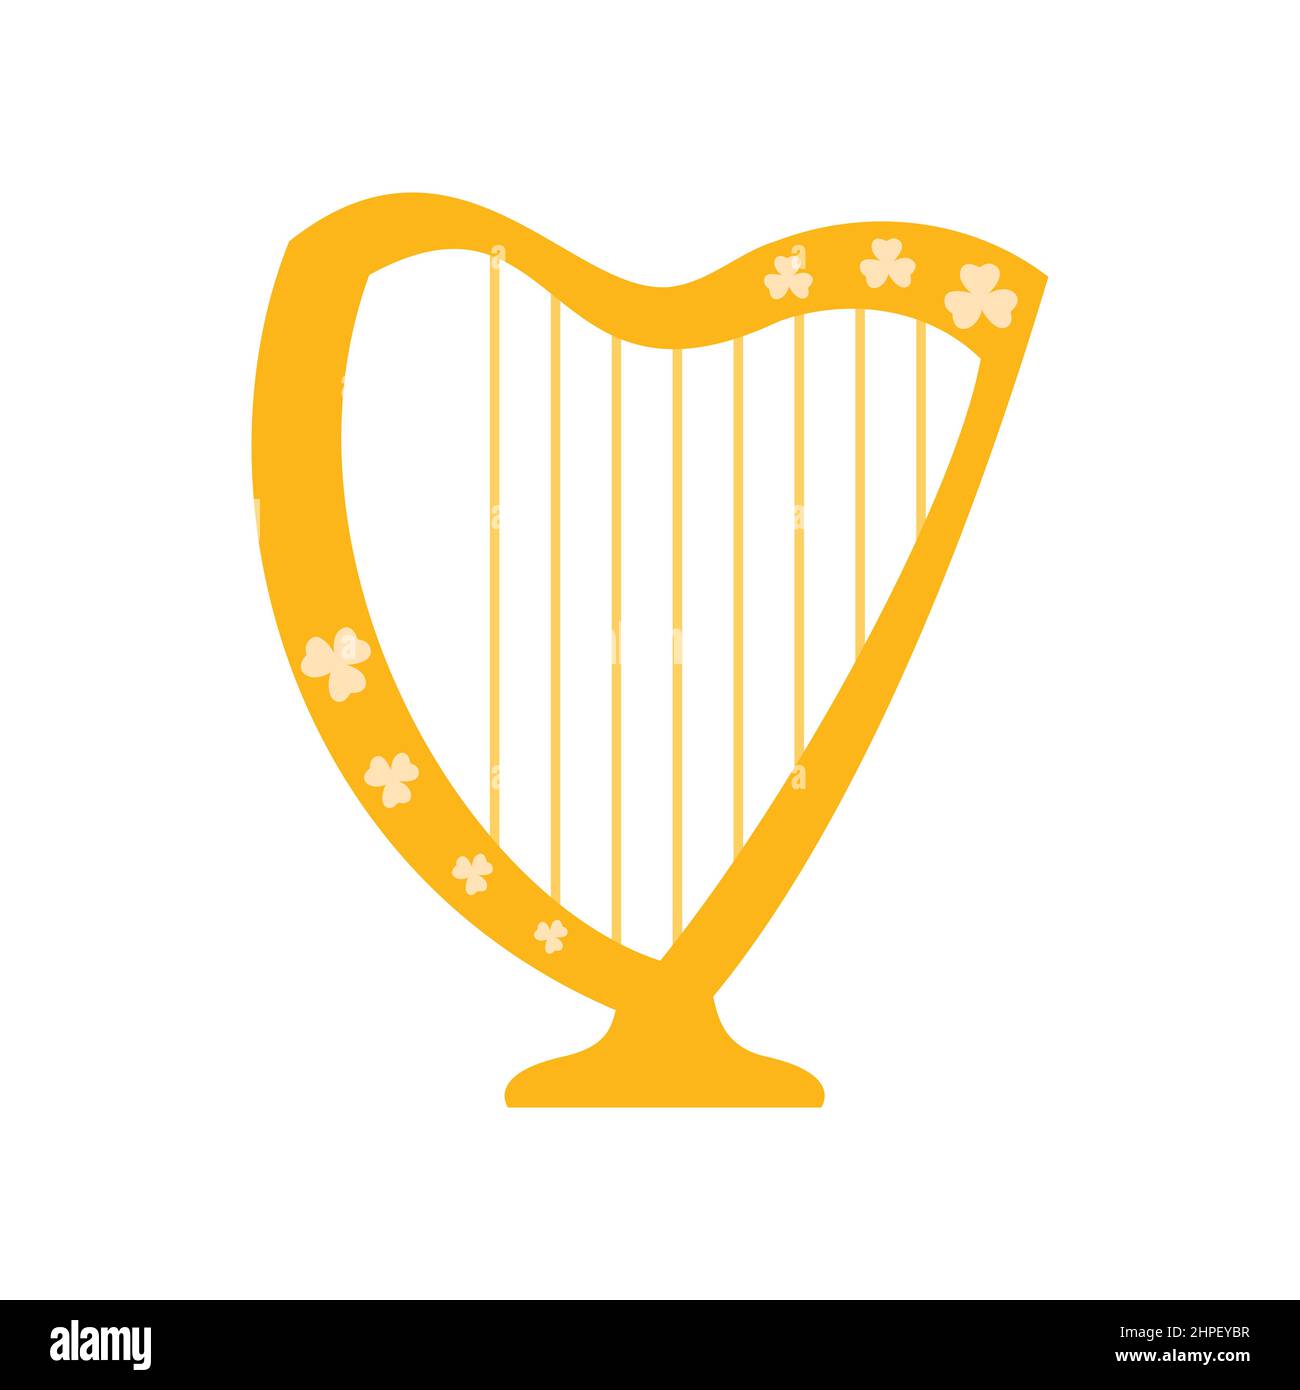 Harfe mit Kleeblatt-Ornament. St. Patricks Day Feiertagselement. Festliche Harfe auf weißem Hintergrund isoliert. Vektorgrafik flach. Stock Vektor